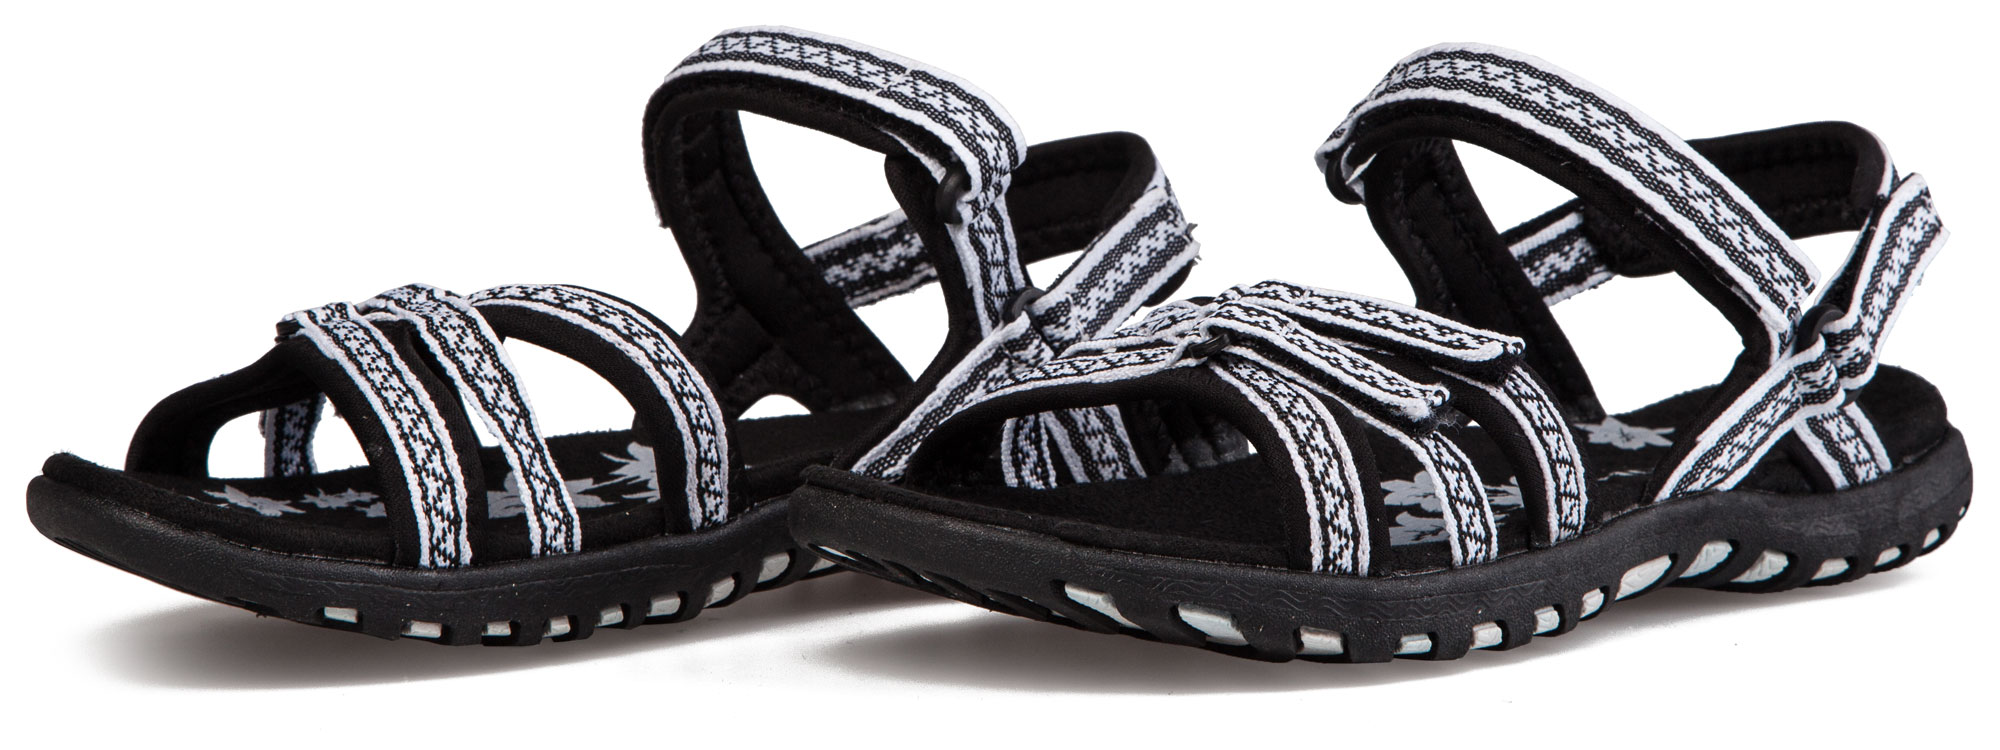 Women’s outdoor summer sandals